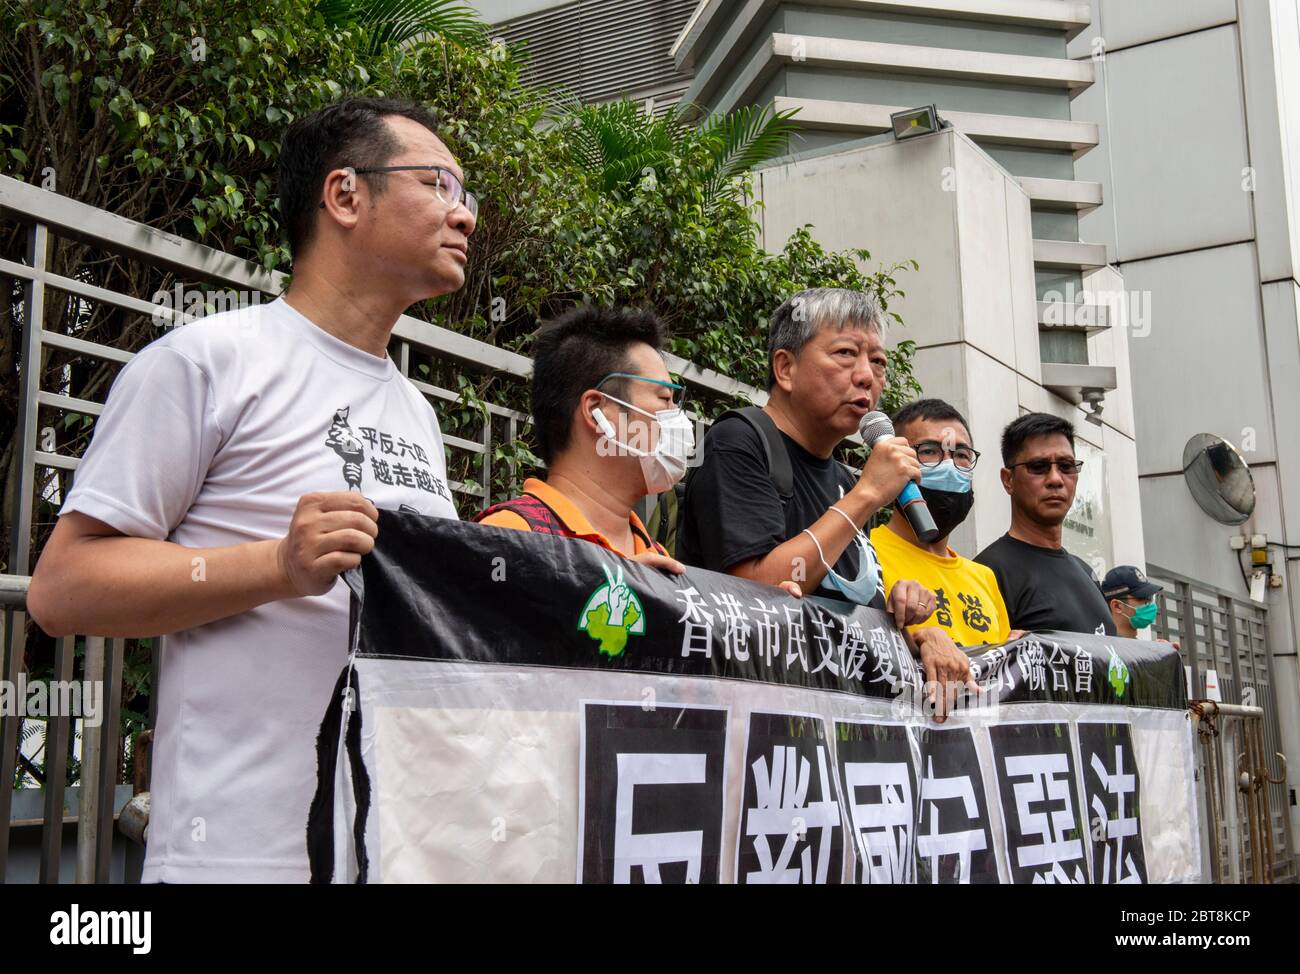 24 de mayo de 2020, Hong Kong, Hong Kong, China: Con este evento del 4 de junio de los años prohibido, la gente participa en una carrera de 10km para conmemorar el 31º aniversario del Movimiento Democrático 1989 en China que terminó con el incidente de la Plaza de Tiananmen. LA carrera toma lugares de importancia para la lucha por la democracia en Hong Kong.LEE CHEUK-YAN (c), ex legislador y uno de los detenidos "Democracia 15", habla fuera de la Oficina de enlace del Gobierno Popular Central en la RAE de Hong Kong, Sai Yin Pun. Compañero 'Democracia 15'' arrestee, Richard Tsoi se une a él (imagen de crédito: © Jayne Russell/ZUMA Wire) Foto de stock